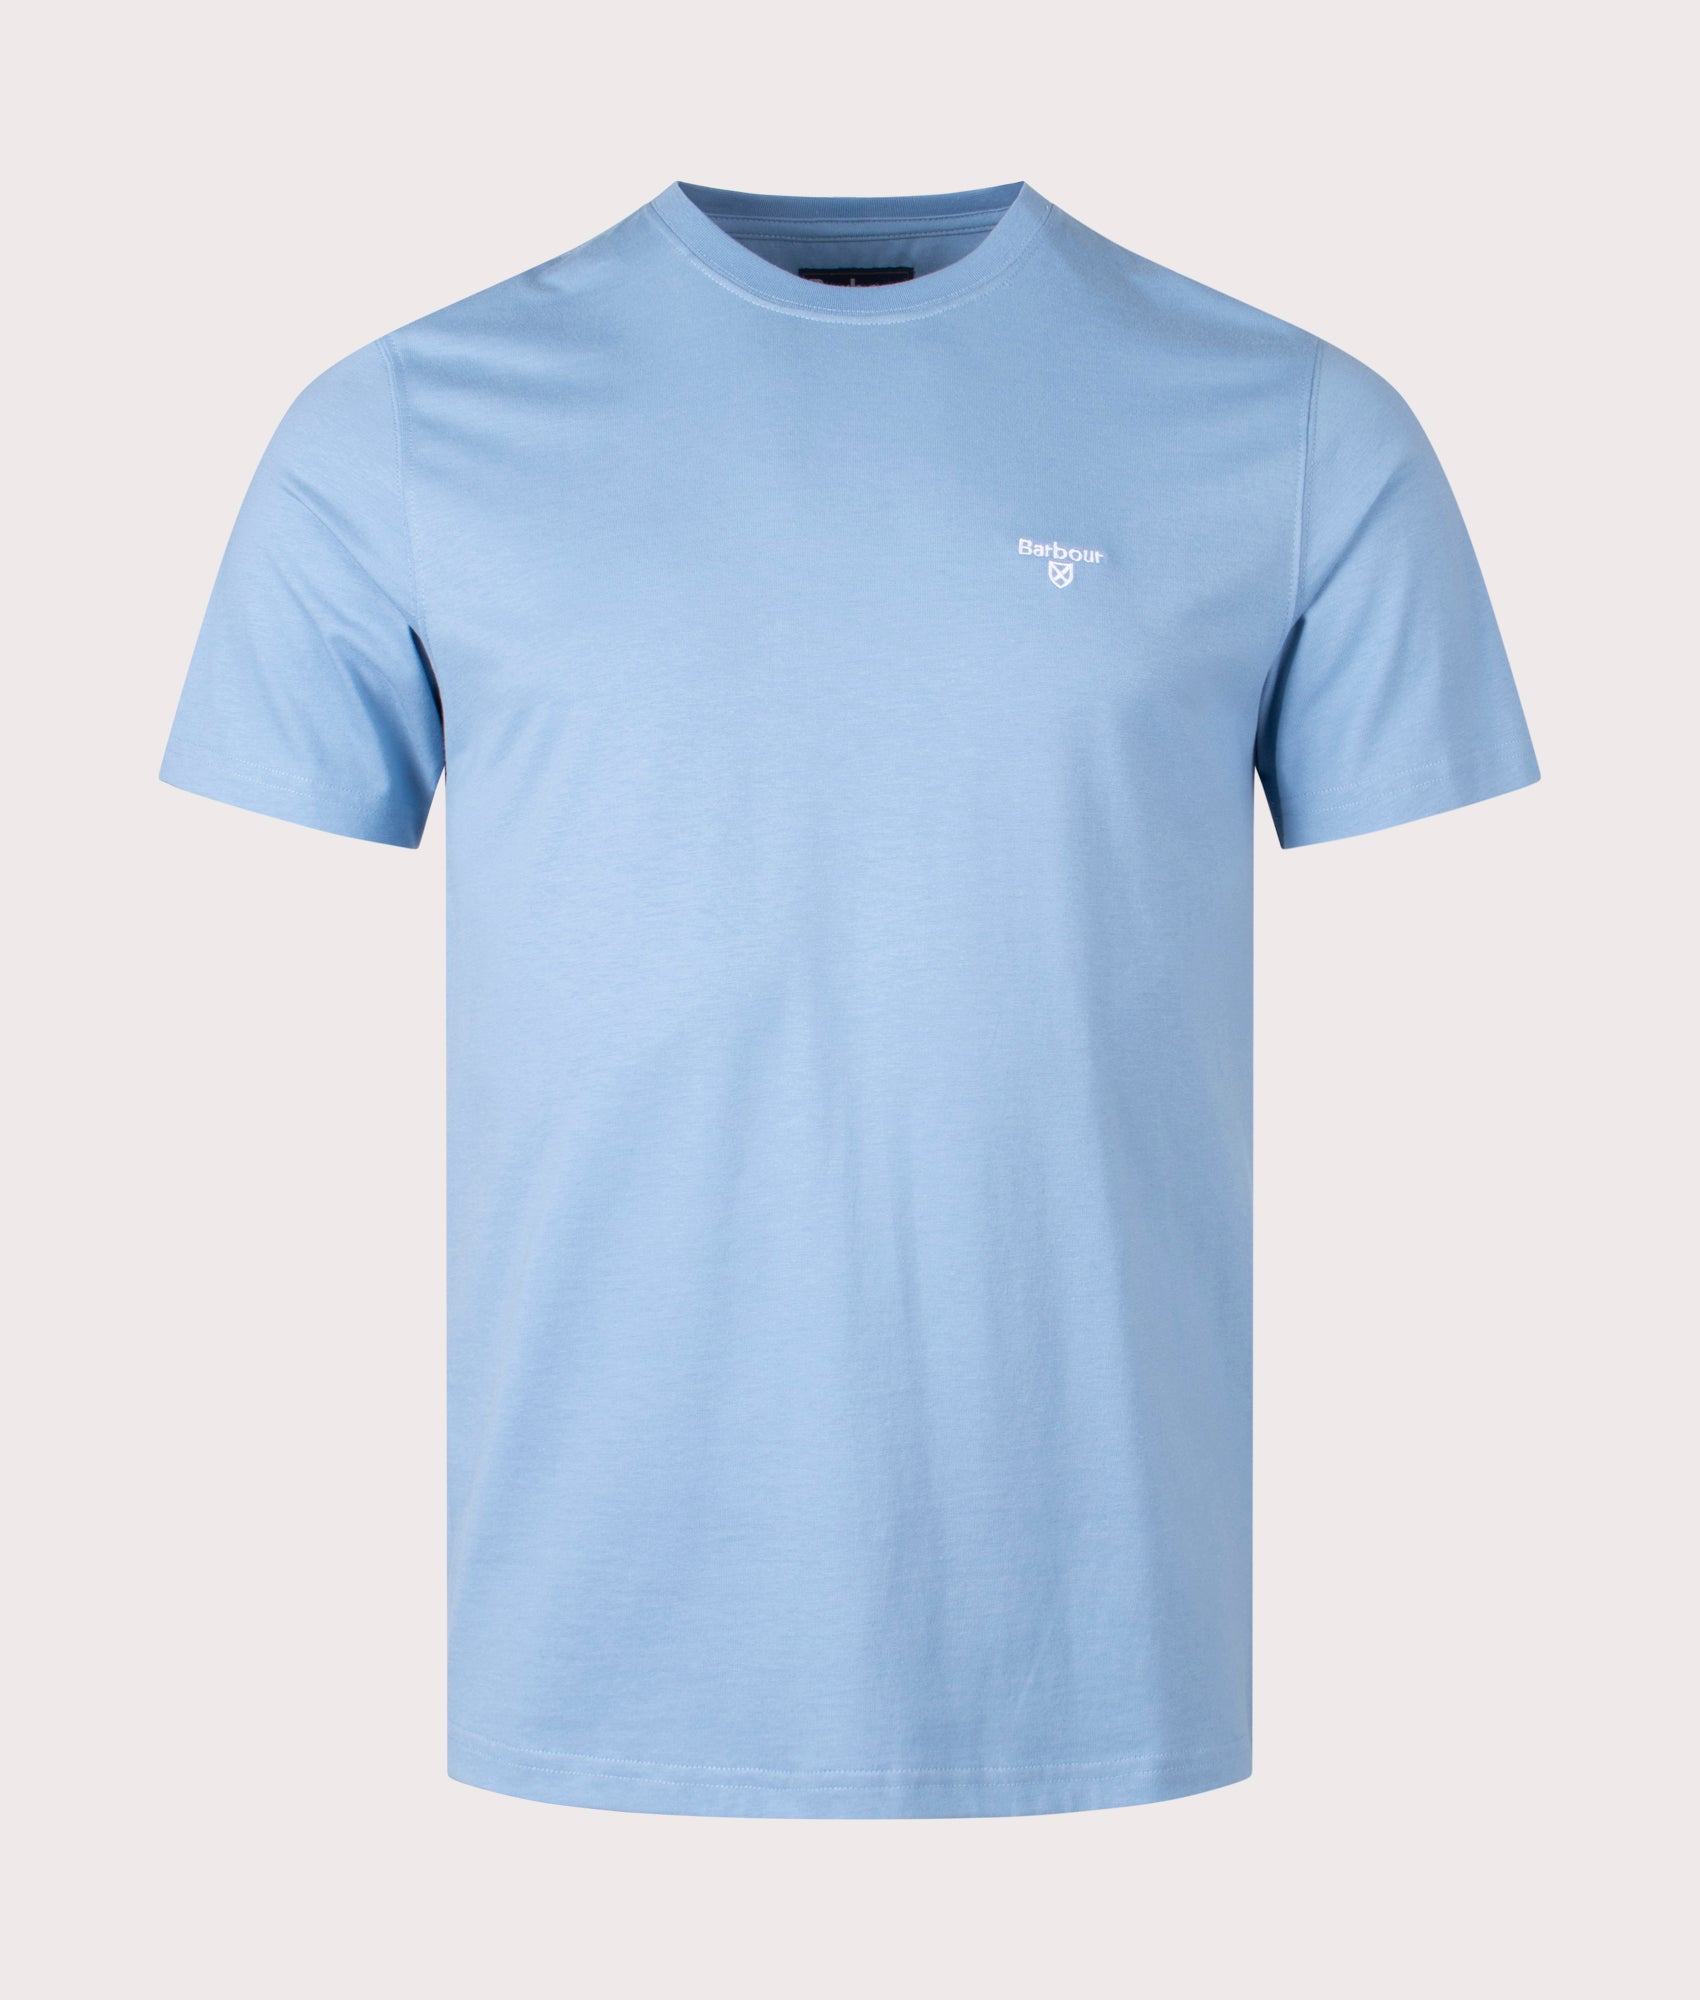 Barbour Lifestyle Mens Essential Sports T-Shirt - Colour: BL33 Blue - Size: Medium